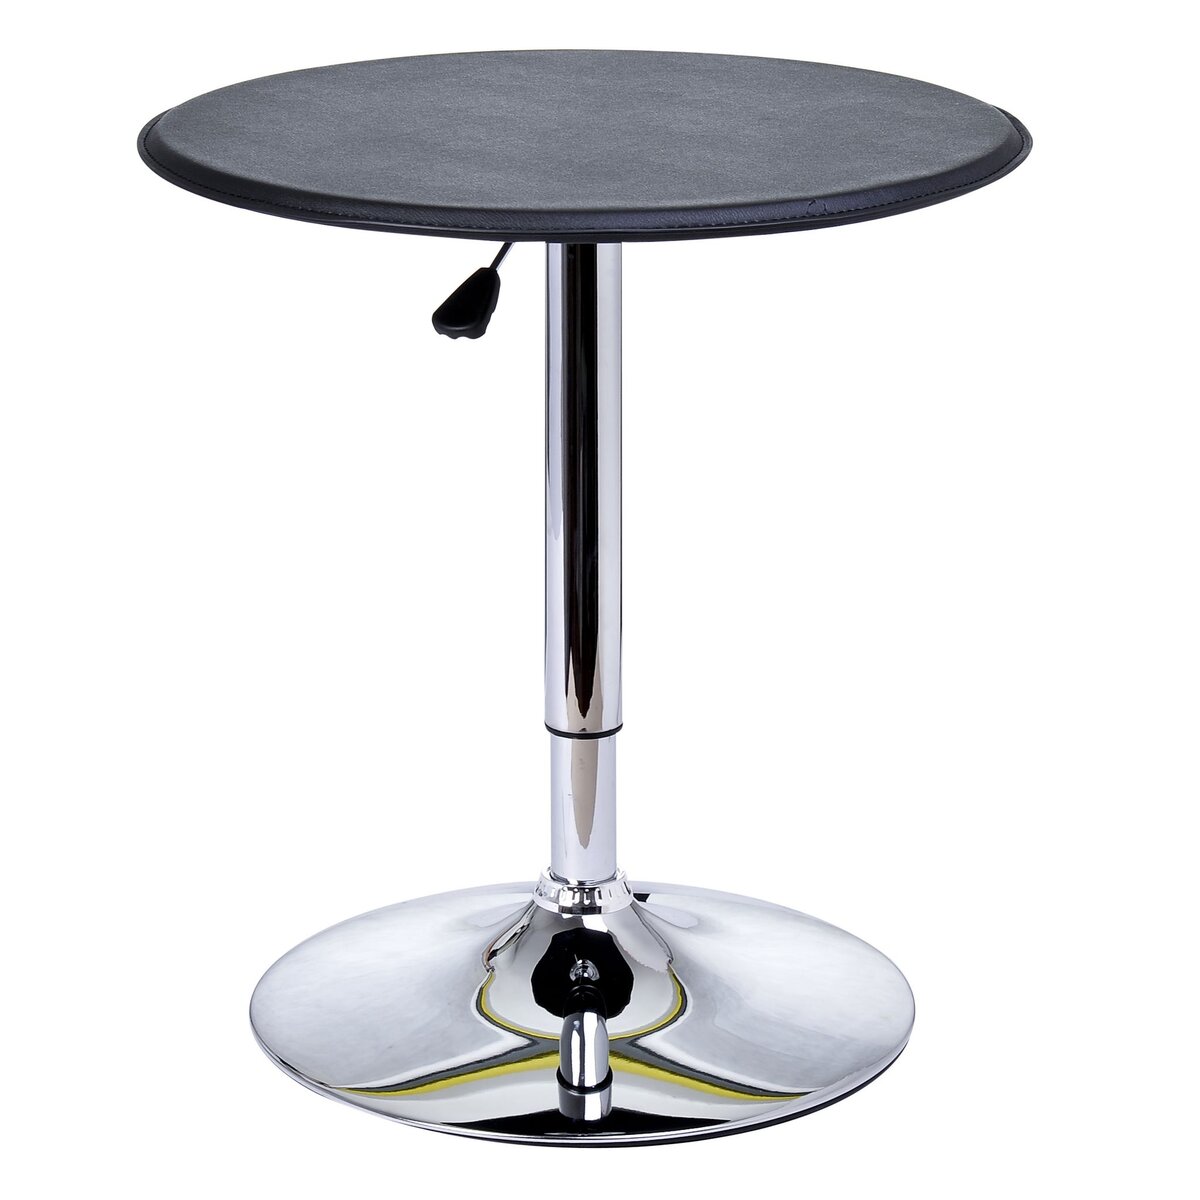 HOMCOM Table de bar table bistro chic style contemporain table ronde hauteur réglable 67-93 cm Ø 63 cm plateau pivotant 360° métal chromé PVC noir